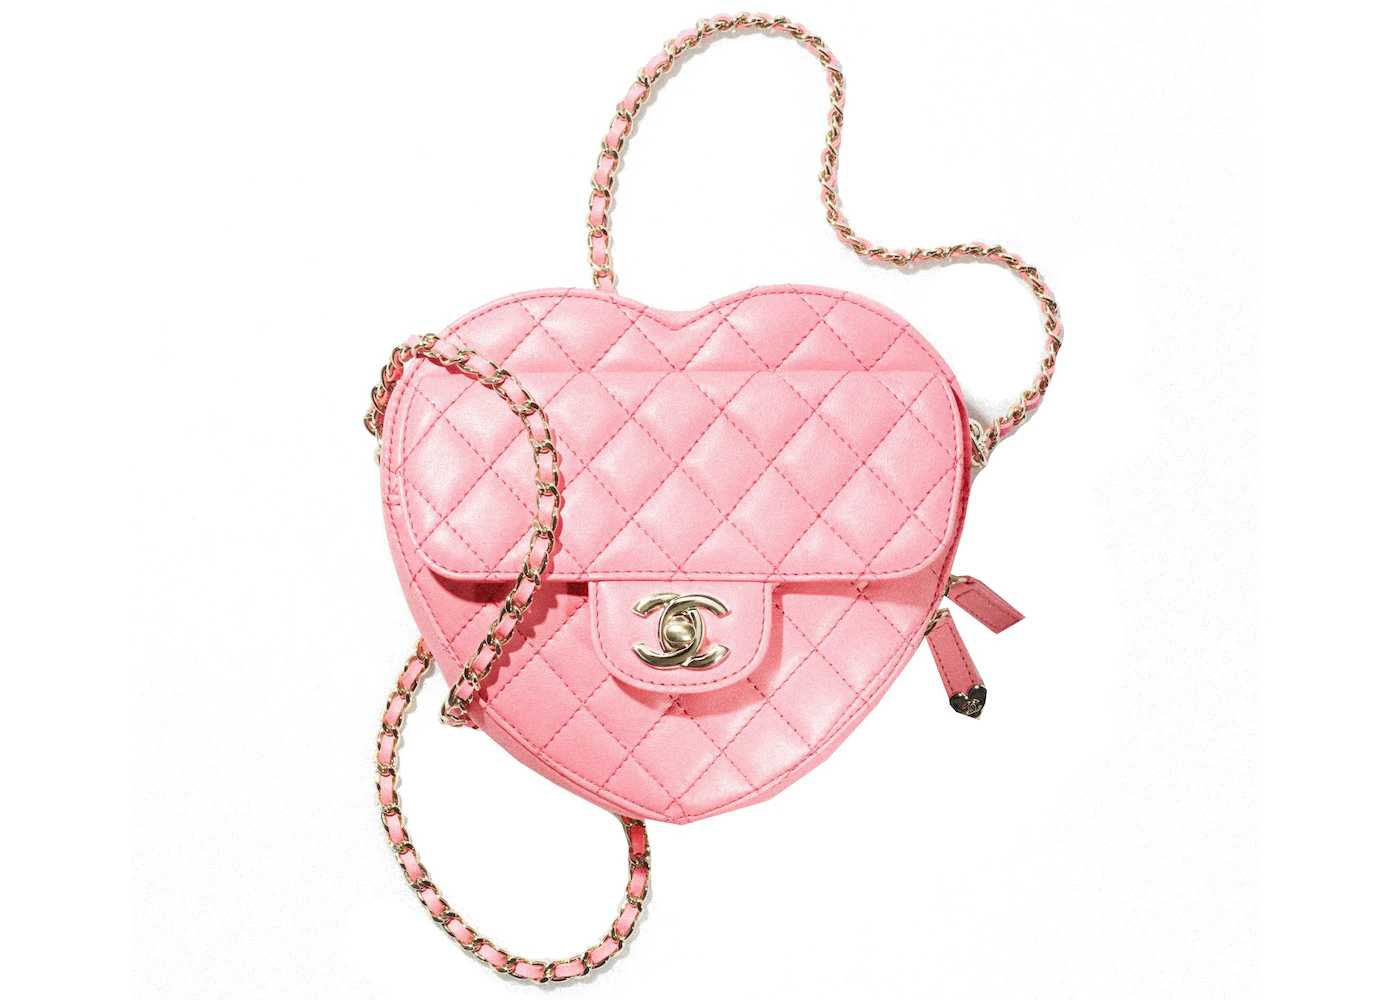 vintage chanel heart bag pink